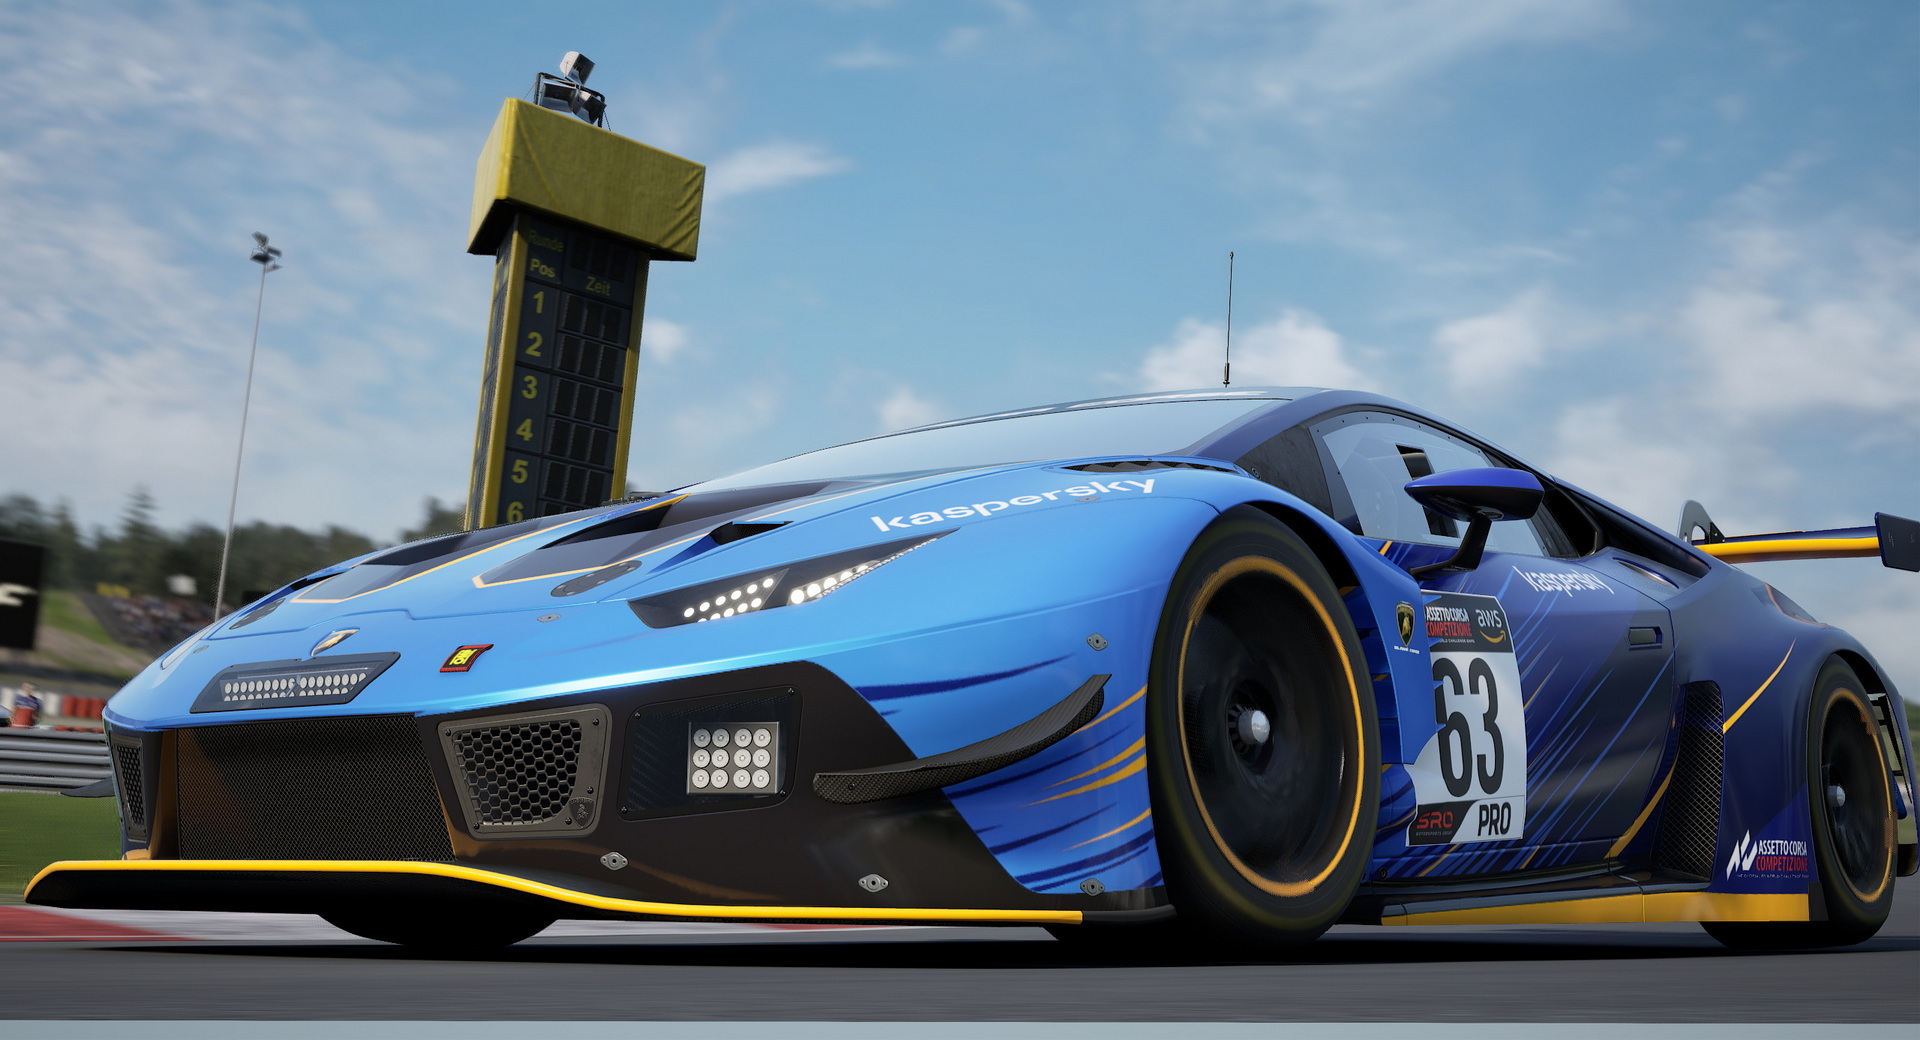 Assetto Corsa Competizione Coming To PS4, Xbox One June 23